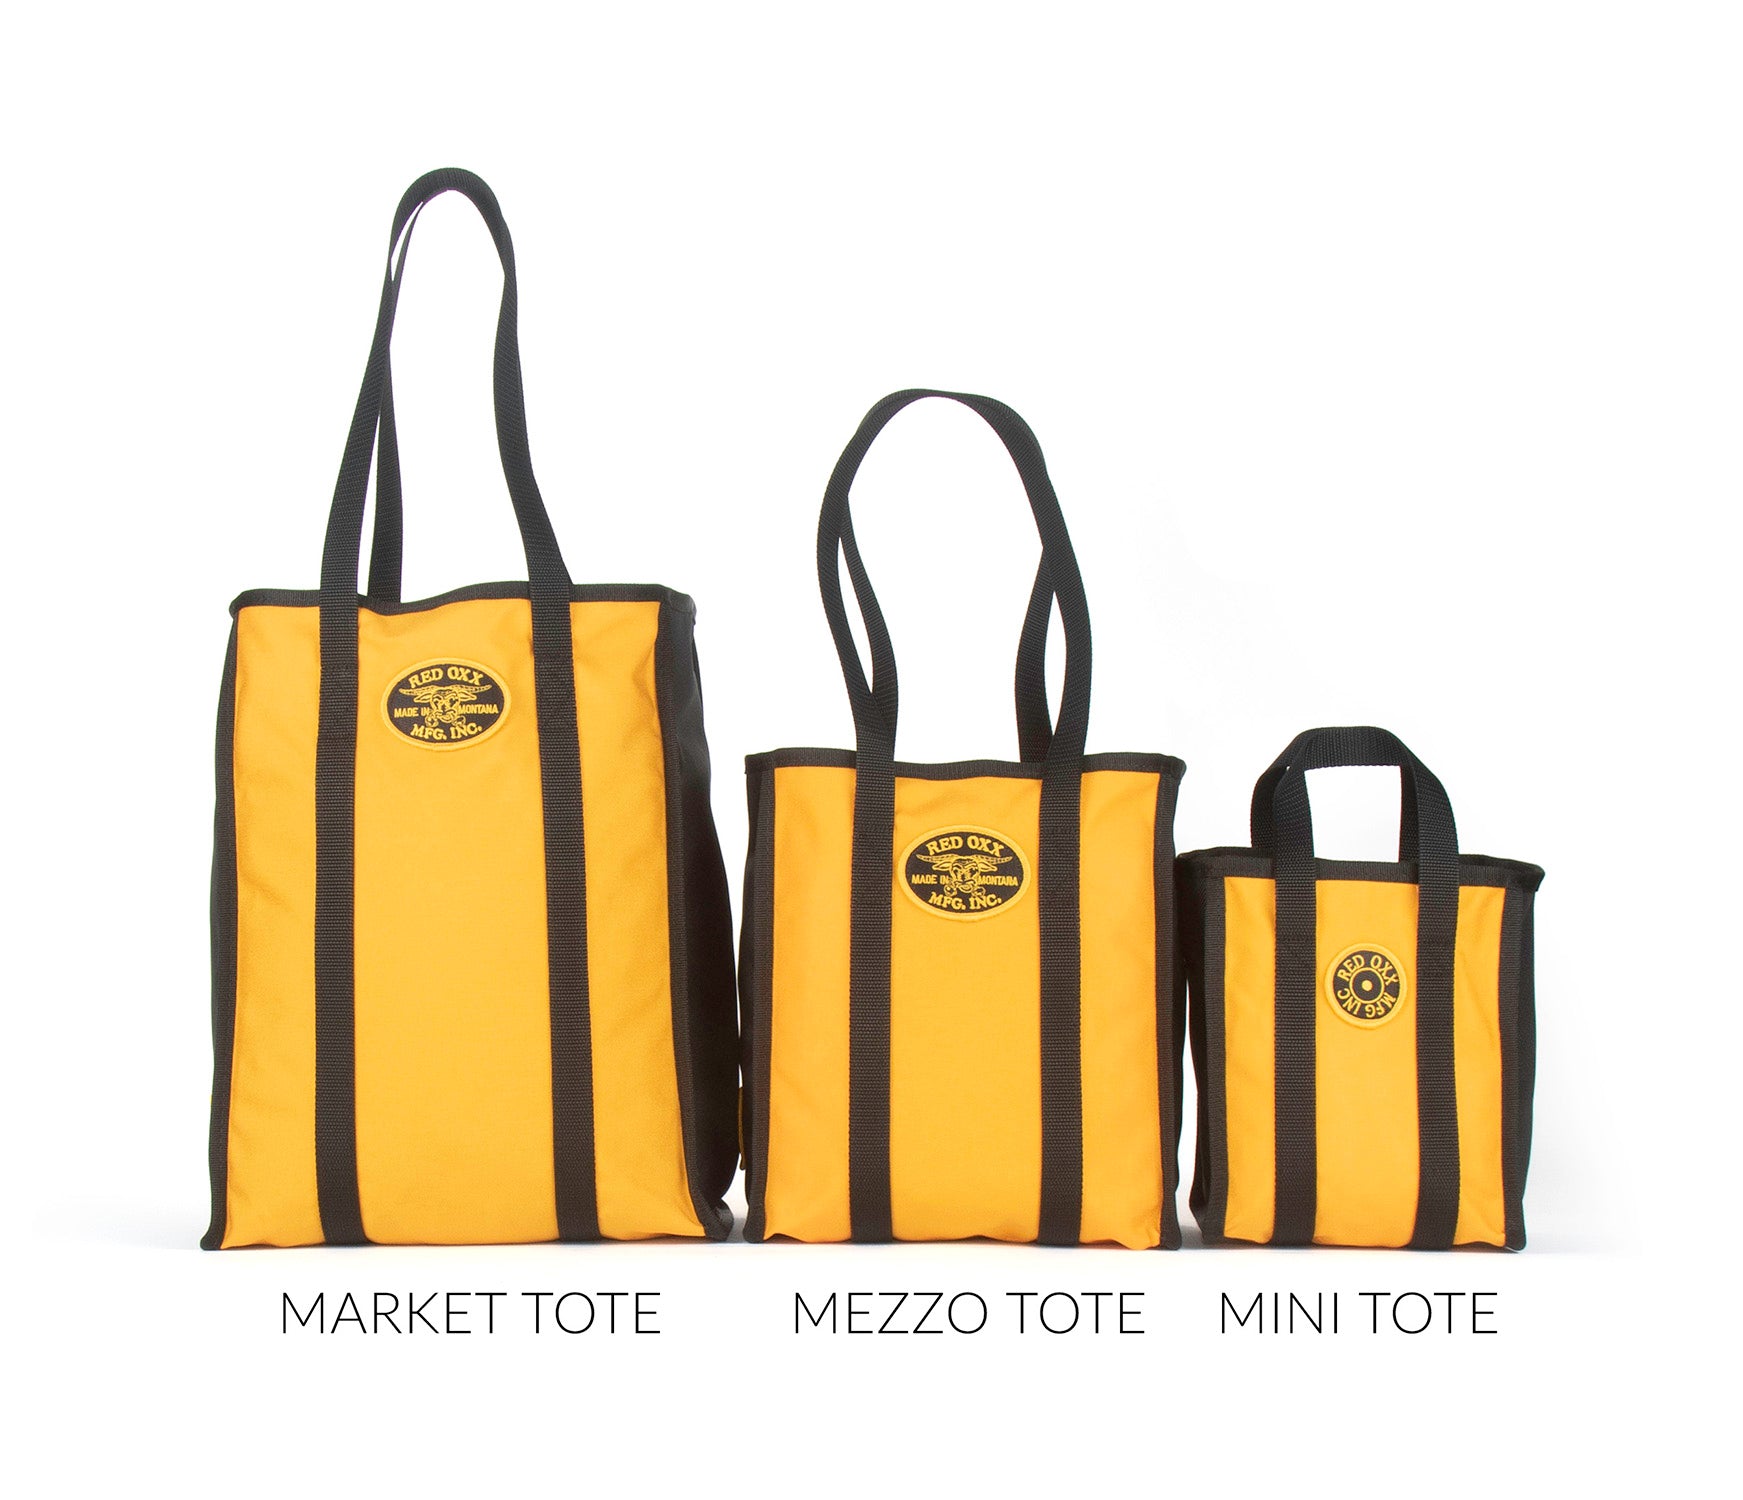 Tote bags comparison front view. From left to right Market Tote , Mezzo Tote , Mini Tote.